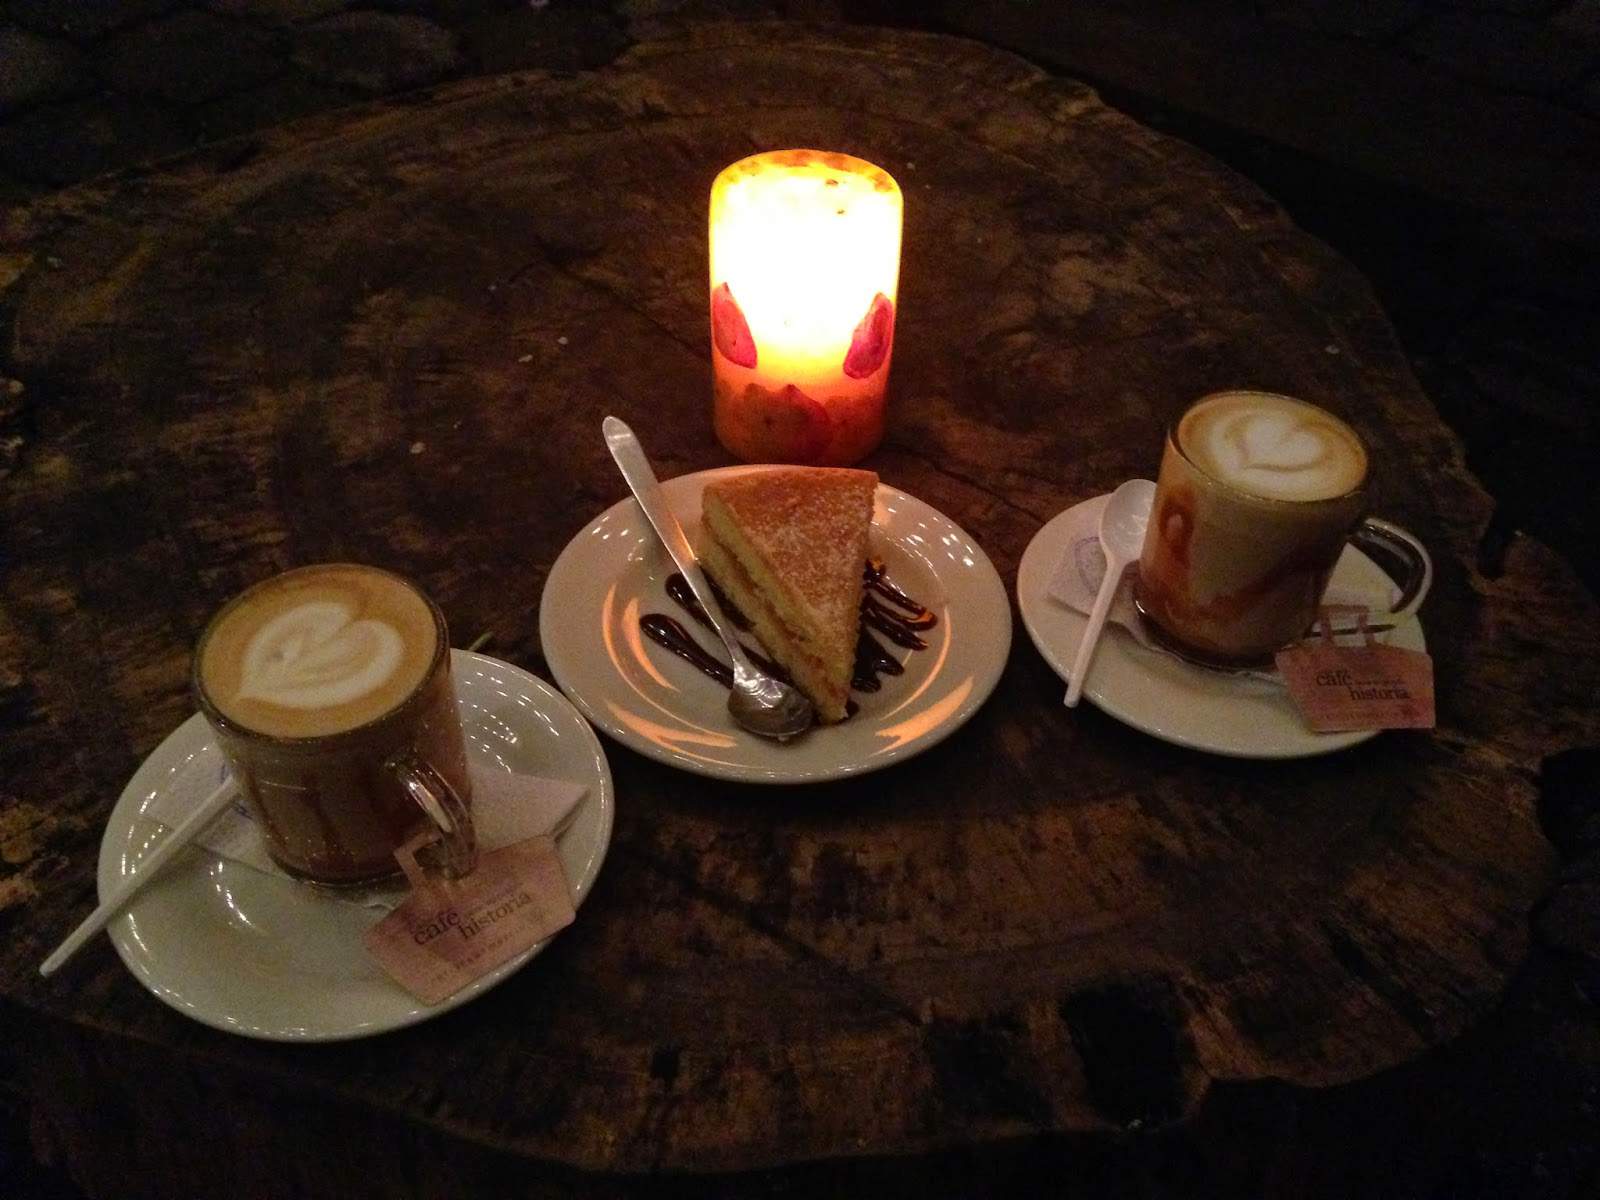 Cappuccino con arequipe at Café Jesús Martín in Salento, Quindío, Colombia